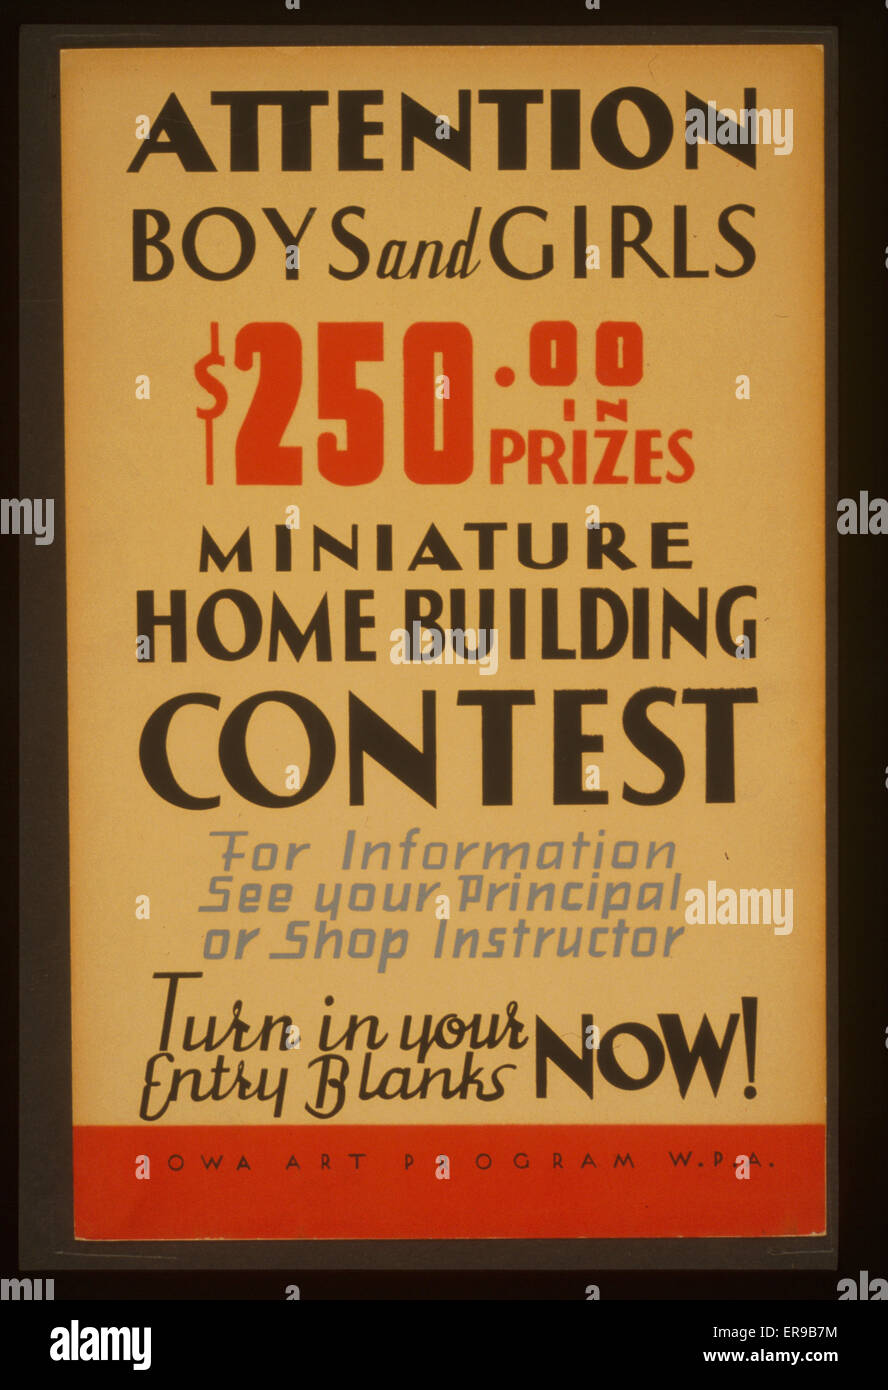 Attention garçons et filles - $250,00 en prix - miniature hom Banque D'Images